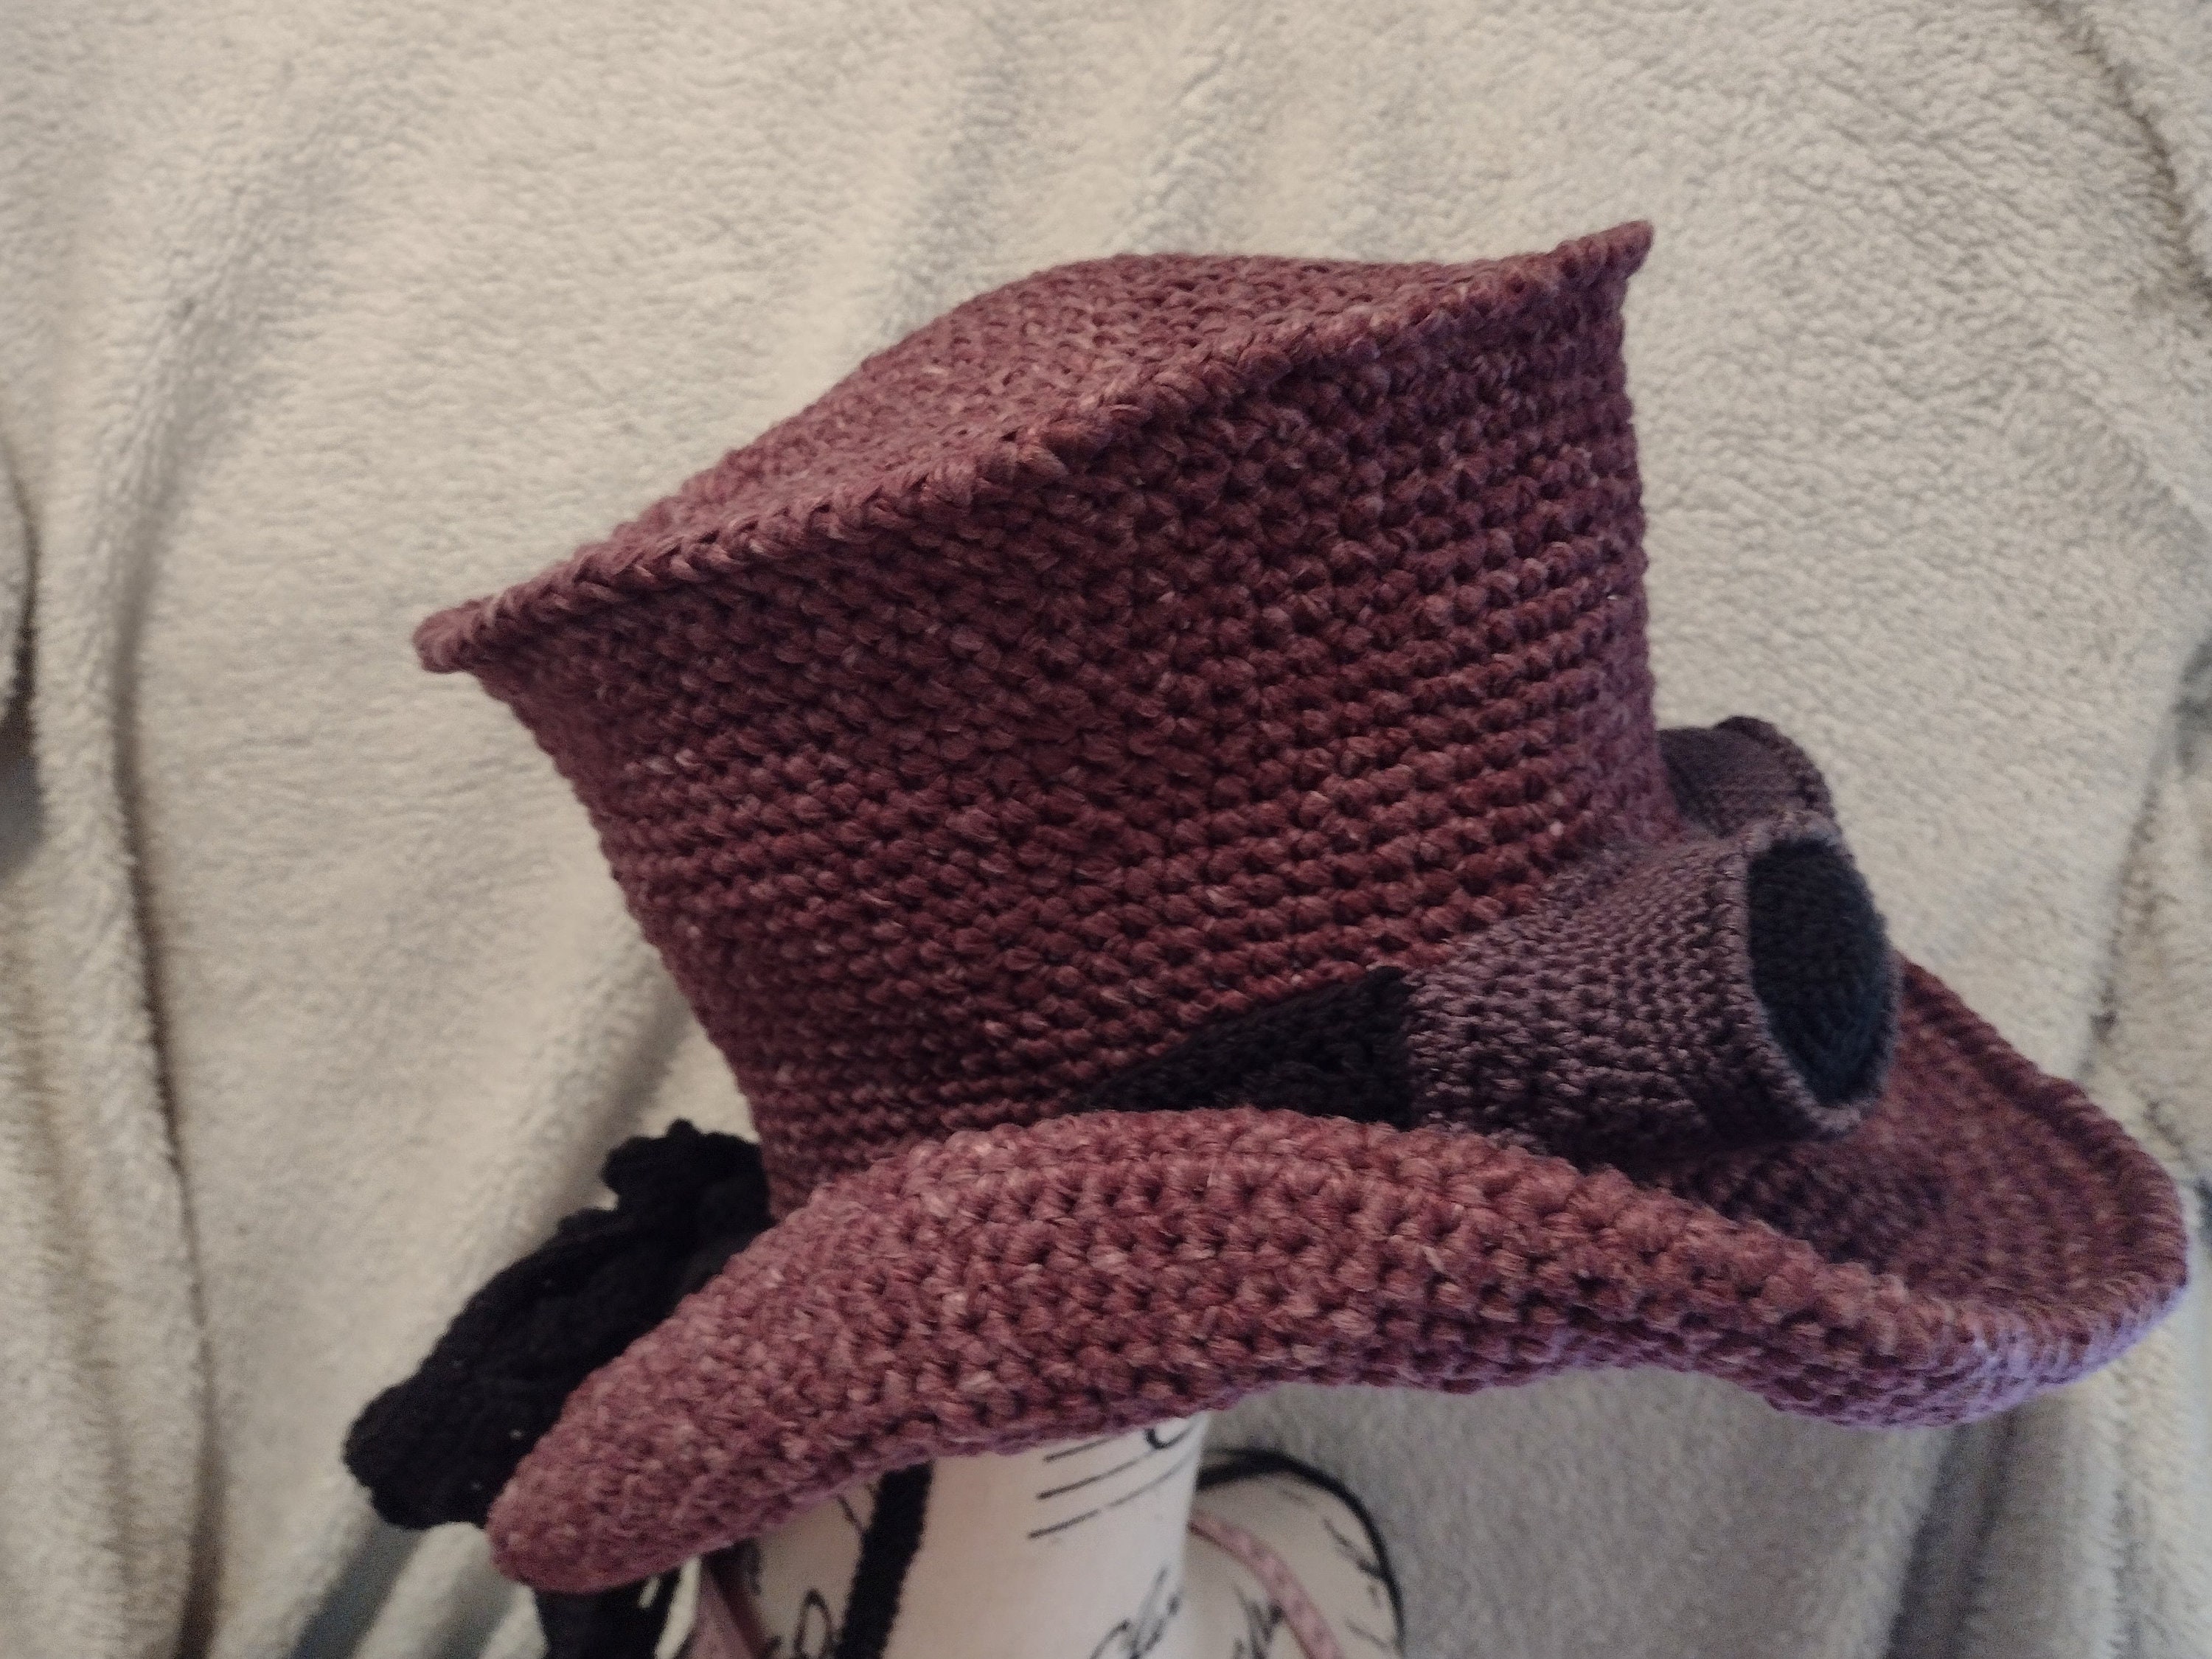 Mini Top Hats Top Hat Keychain Top Hat Decor Crochet Top Hats Crochet Party Decor Colorful Top Hats Accessoires Hoeden & petten Fascinators & Minihoedjes Wonky Mini Hats 